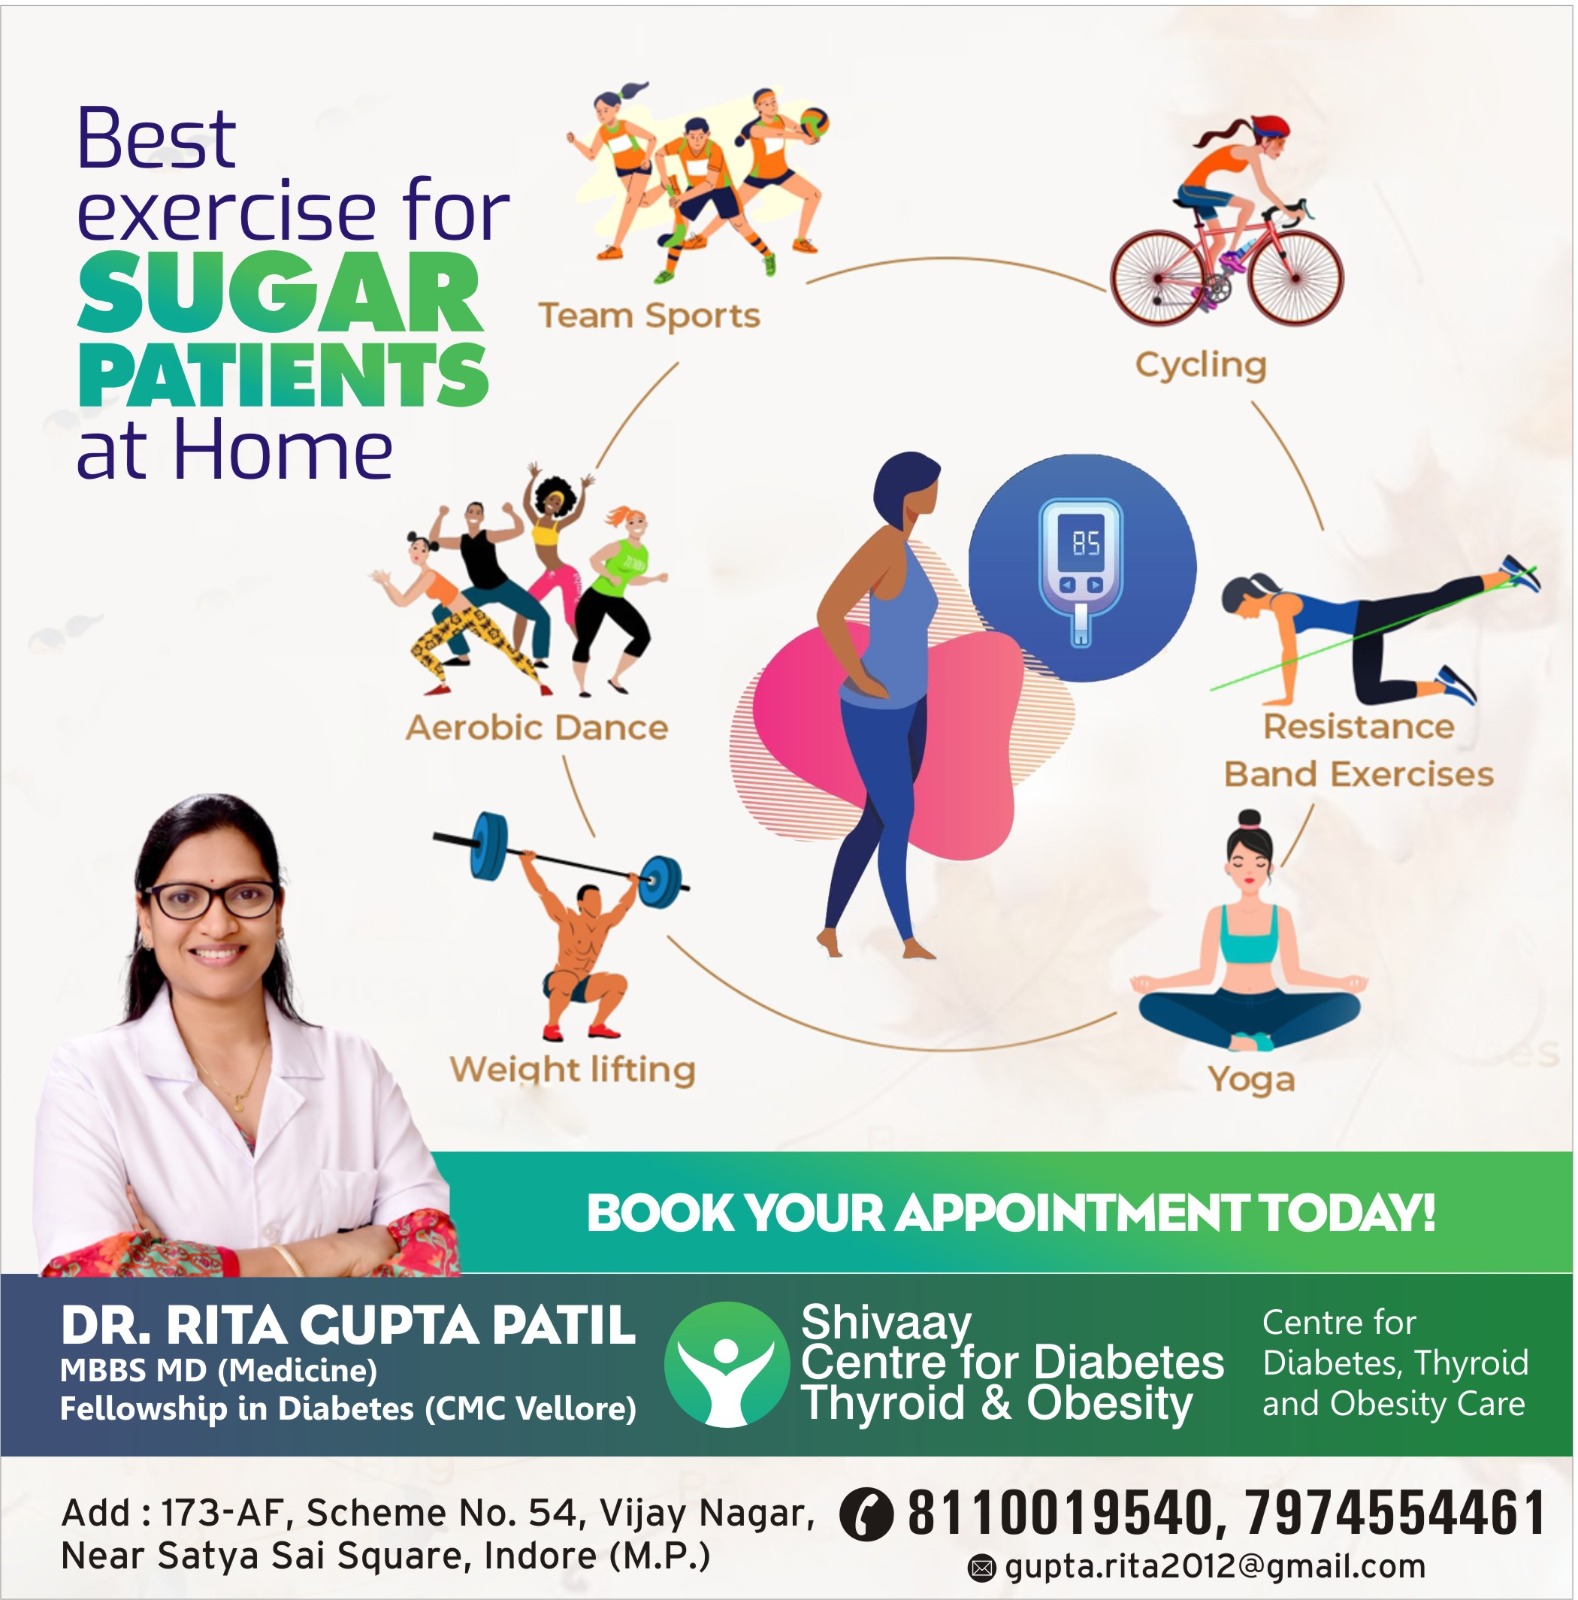 Best Diabetologist in Indore